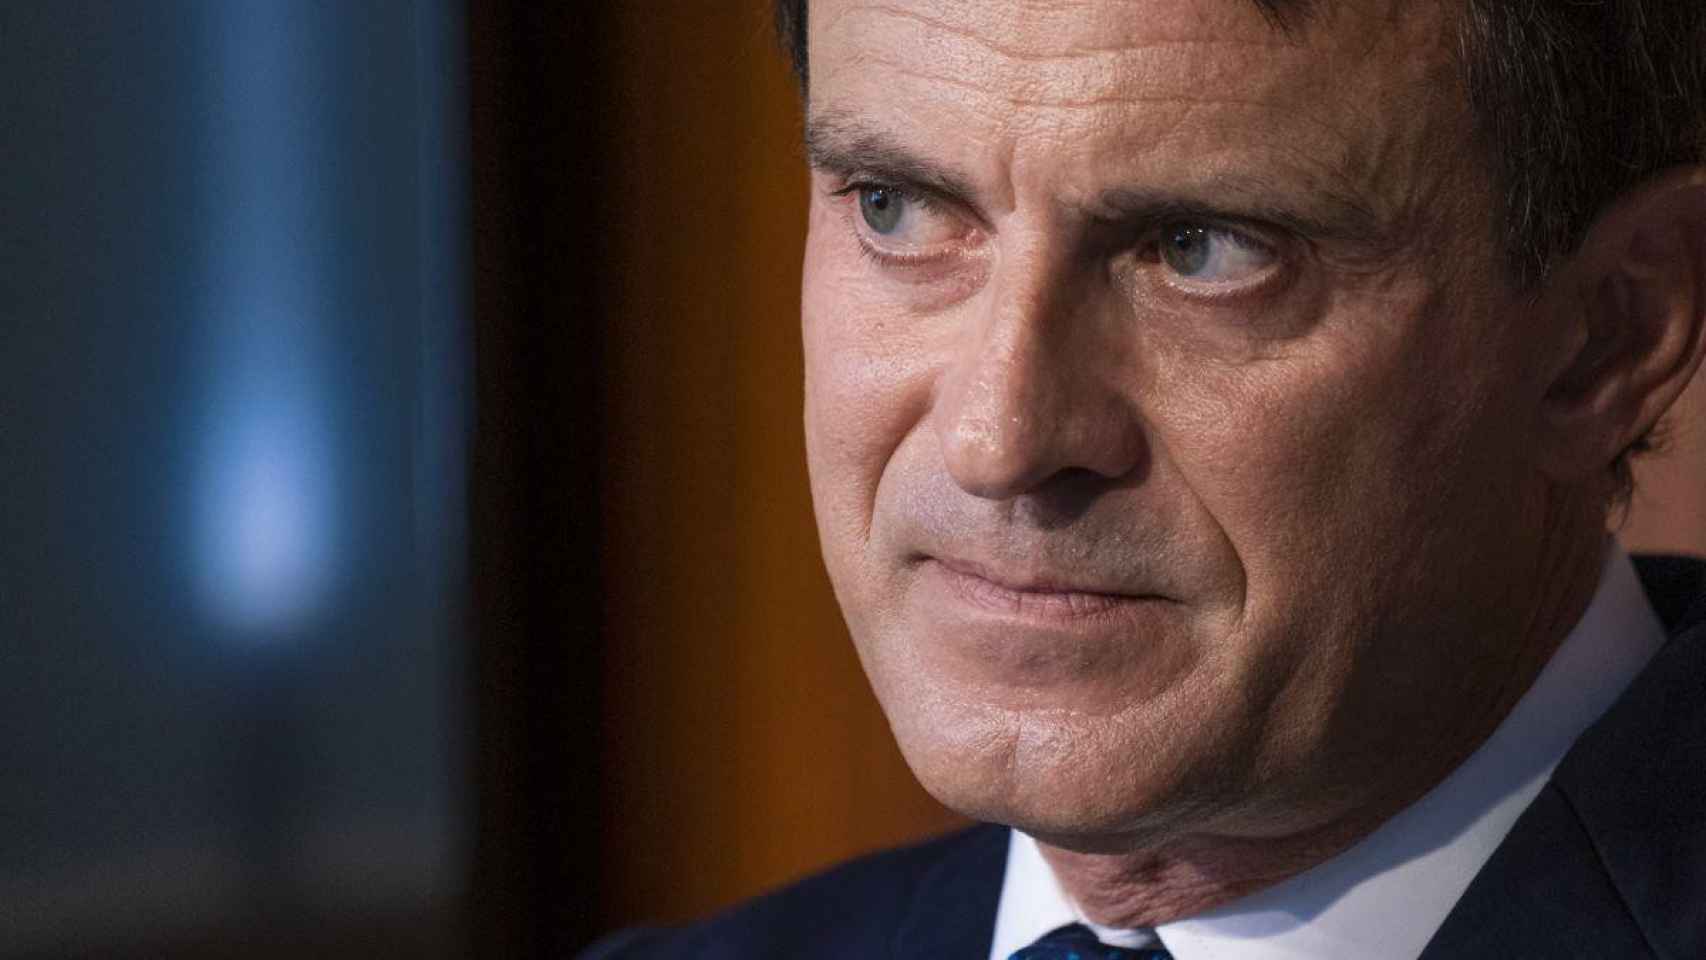 Manuel Valls encabezó la coalición Barcelona pel Canvi-Ciutadans al Ayuntamiento de Barcelona / EP